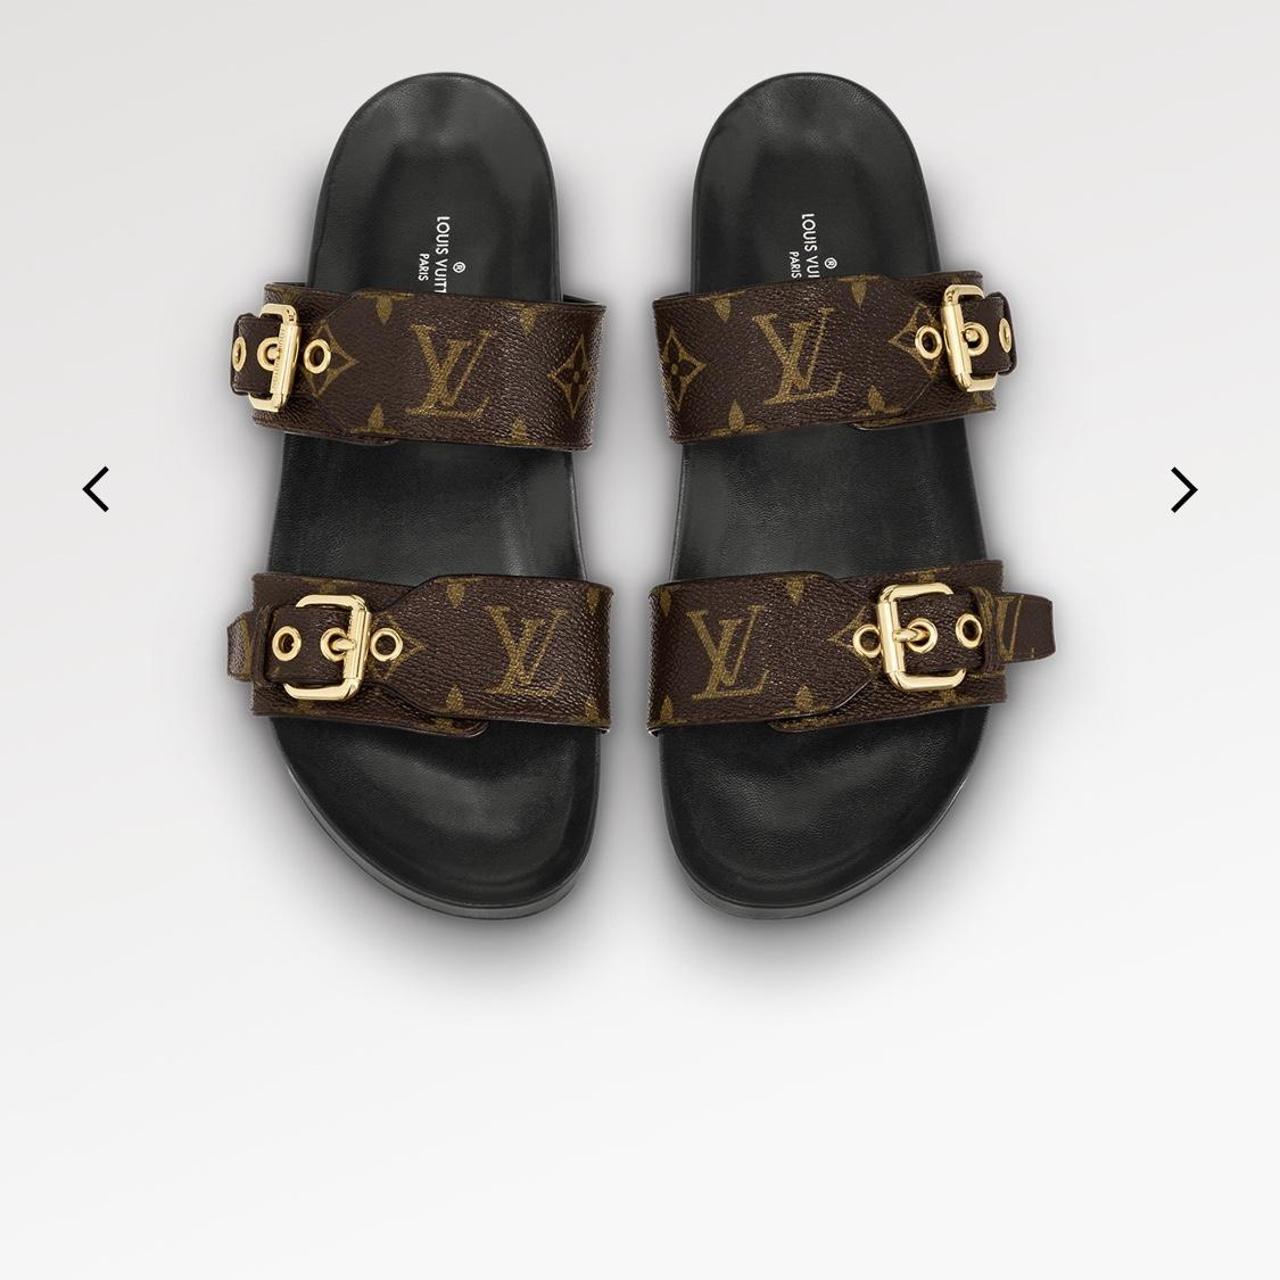 Louis Vuitton Sandals Don't pay though - Depop